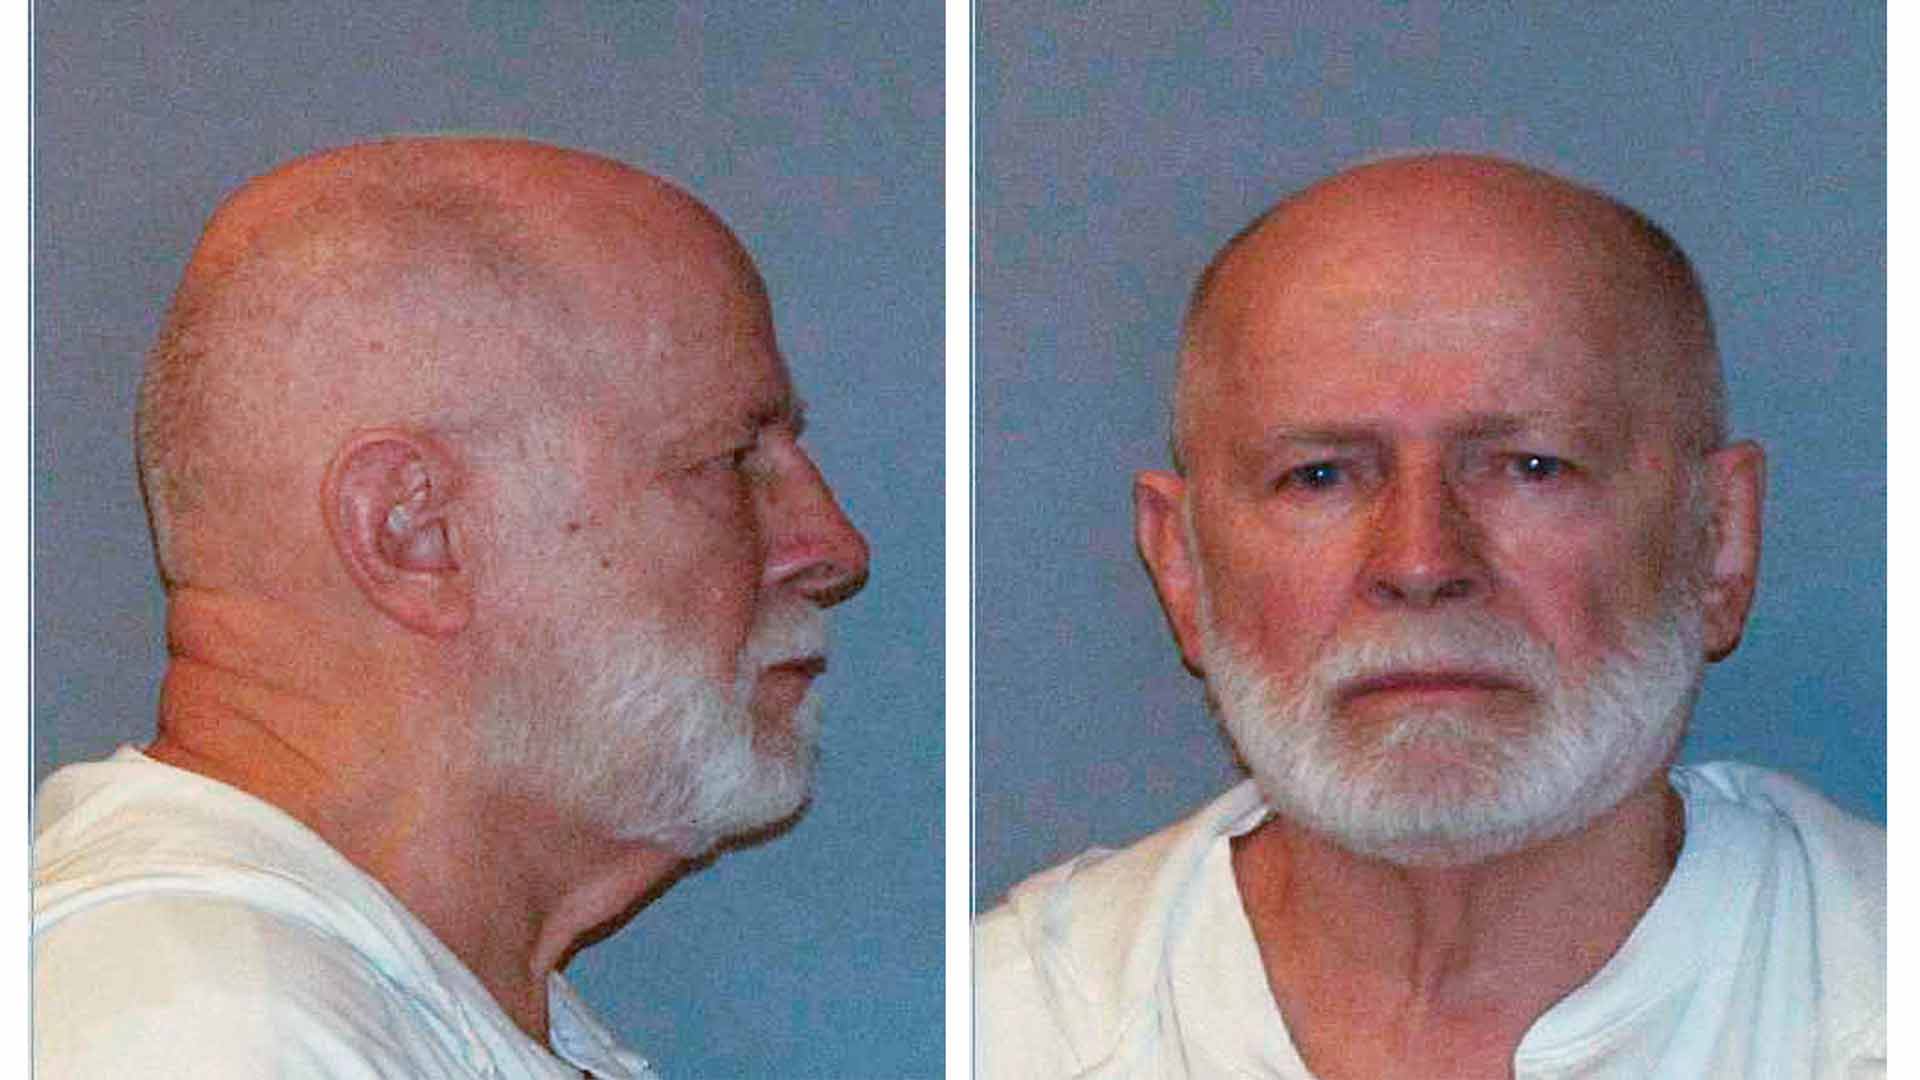 Aparece muerto en prisión 'Whitey' Bulger, el mafioso que inspiró la película 'Infiltrados'